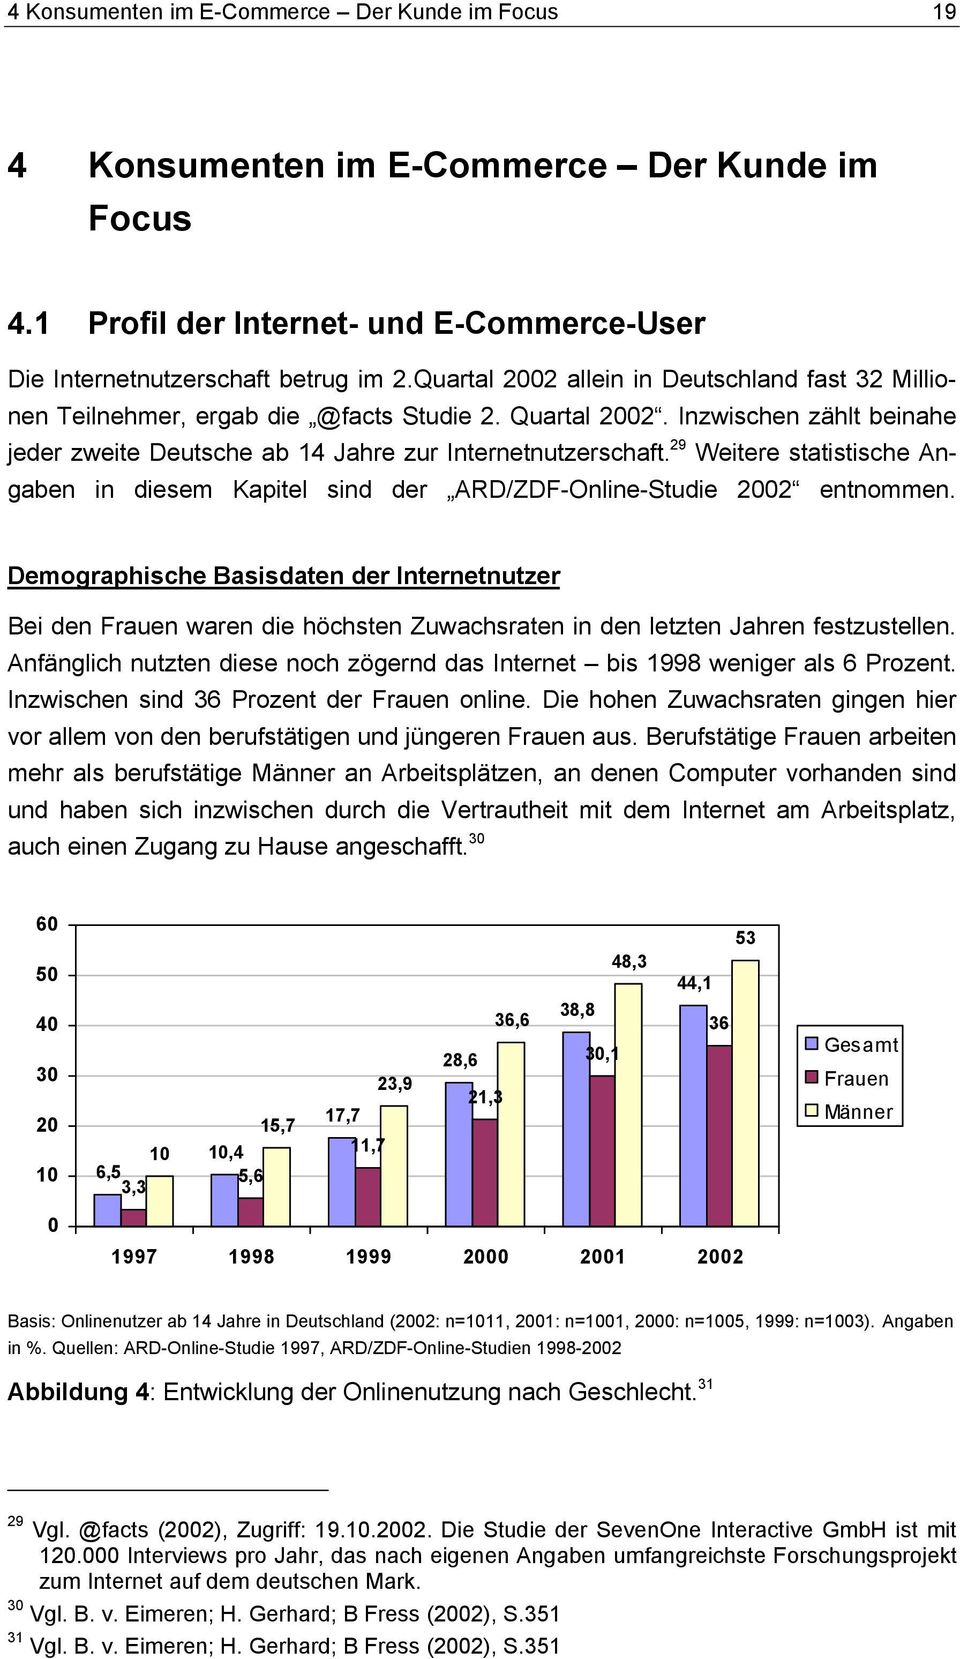 29 Weitere statistische Angaben in diesem Kapitel sind der ARD/ZDF-Online-Studie 2002 entnommen.